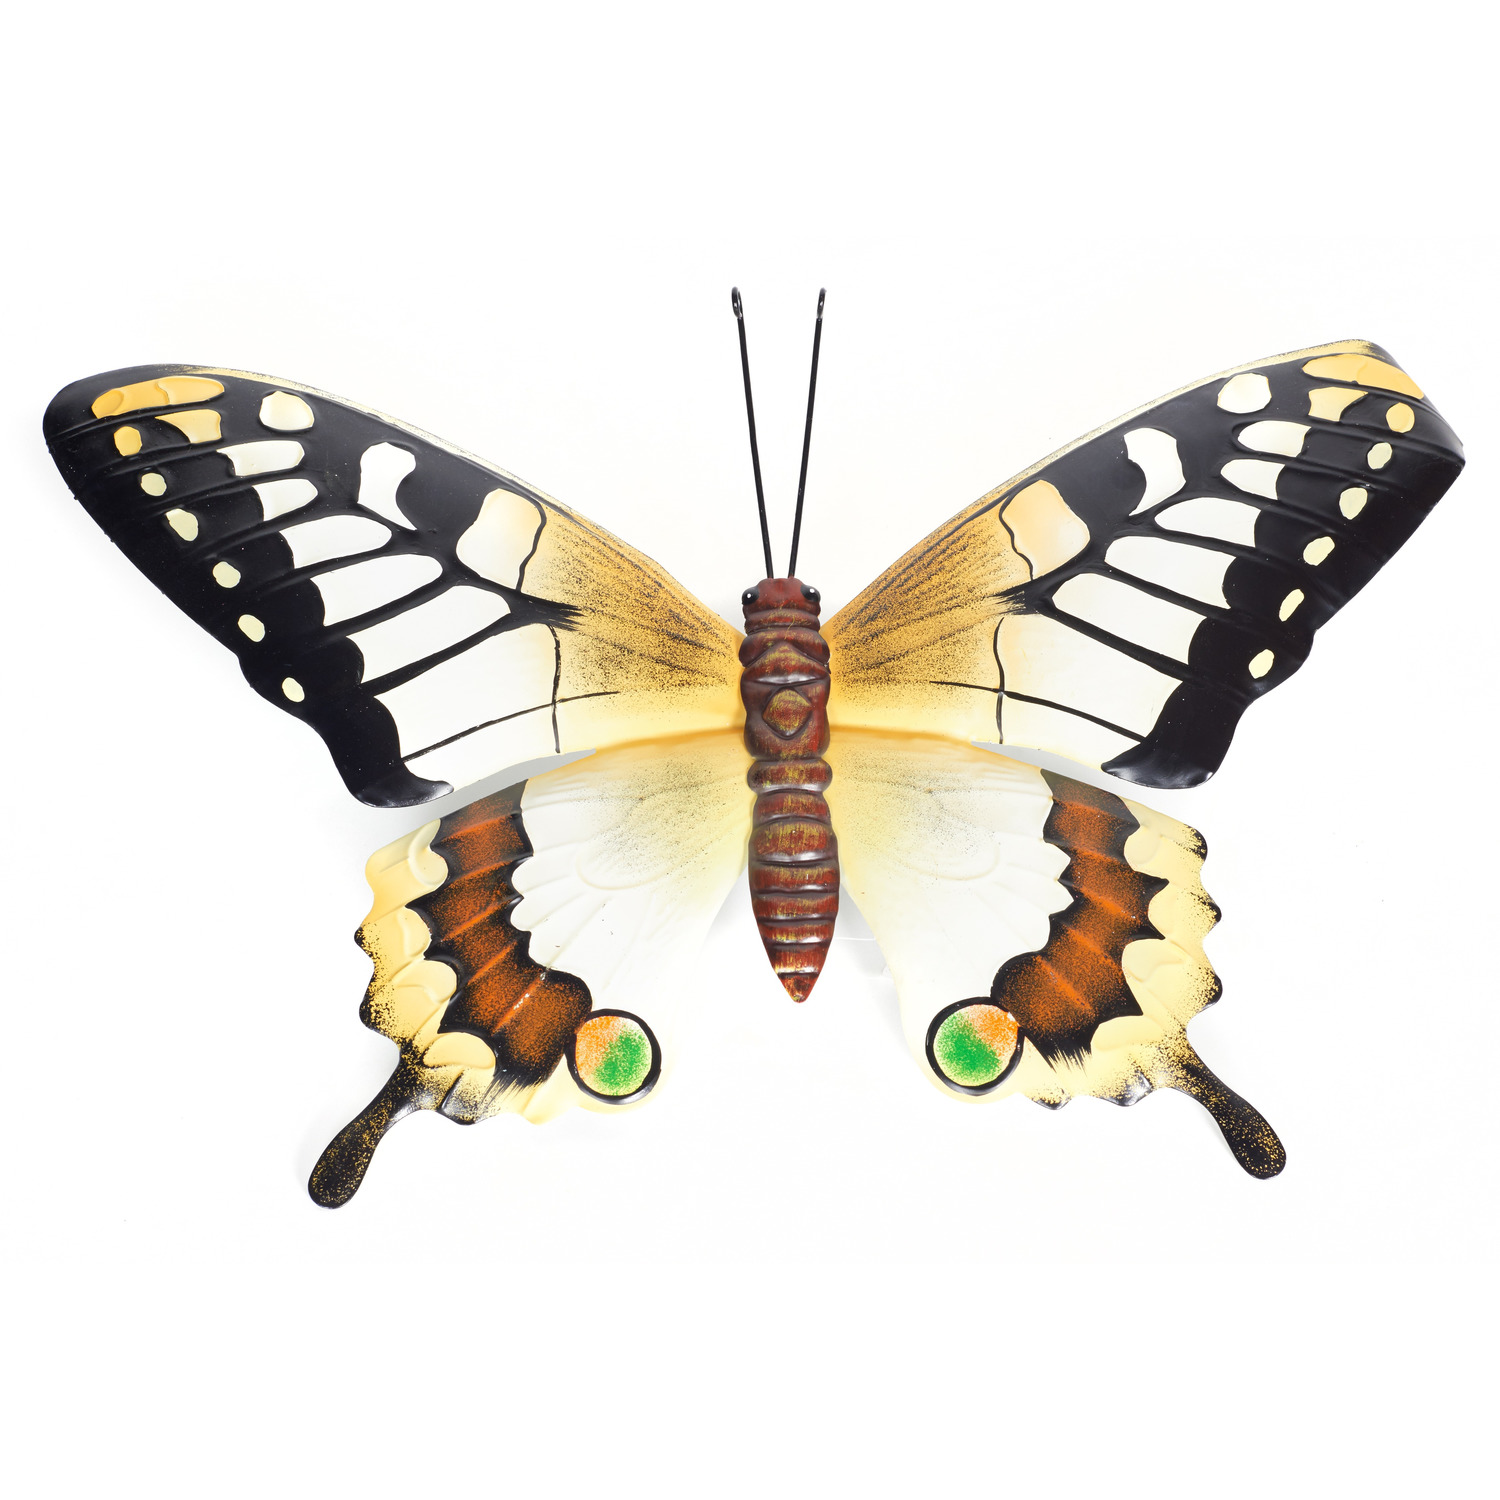 Schutting decoratie vlinders 48 cm geel-zwart metaal